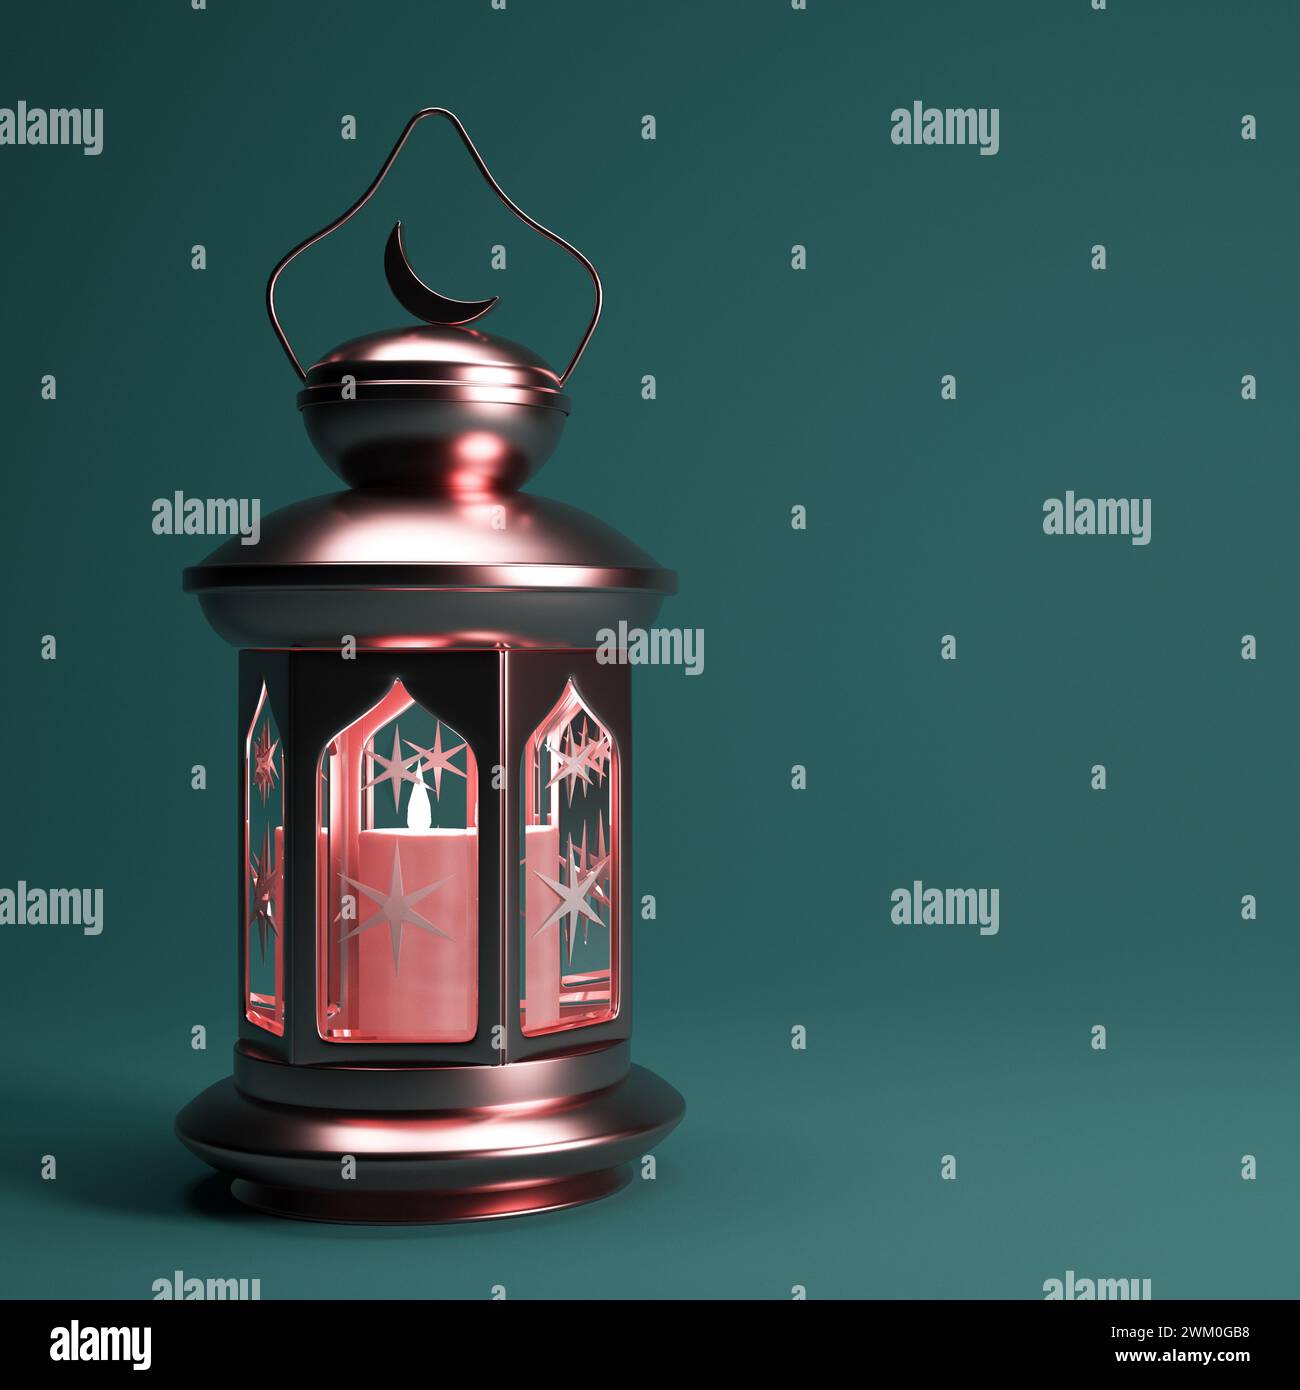 Sfondo Ramadan con lanterna araba dorata e spazio di copia, rendering 3d. Disegno della carta da parati del mese Santo musulmano Ramadan Kareem. Foto Stock